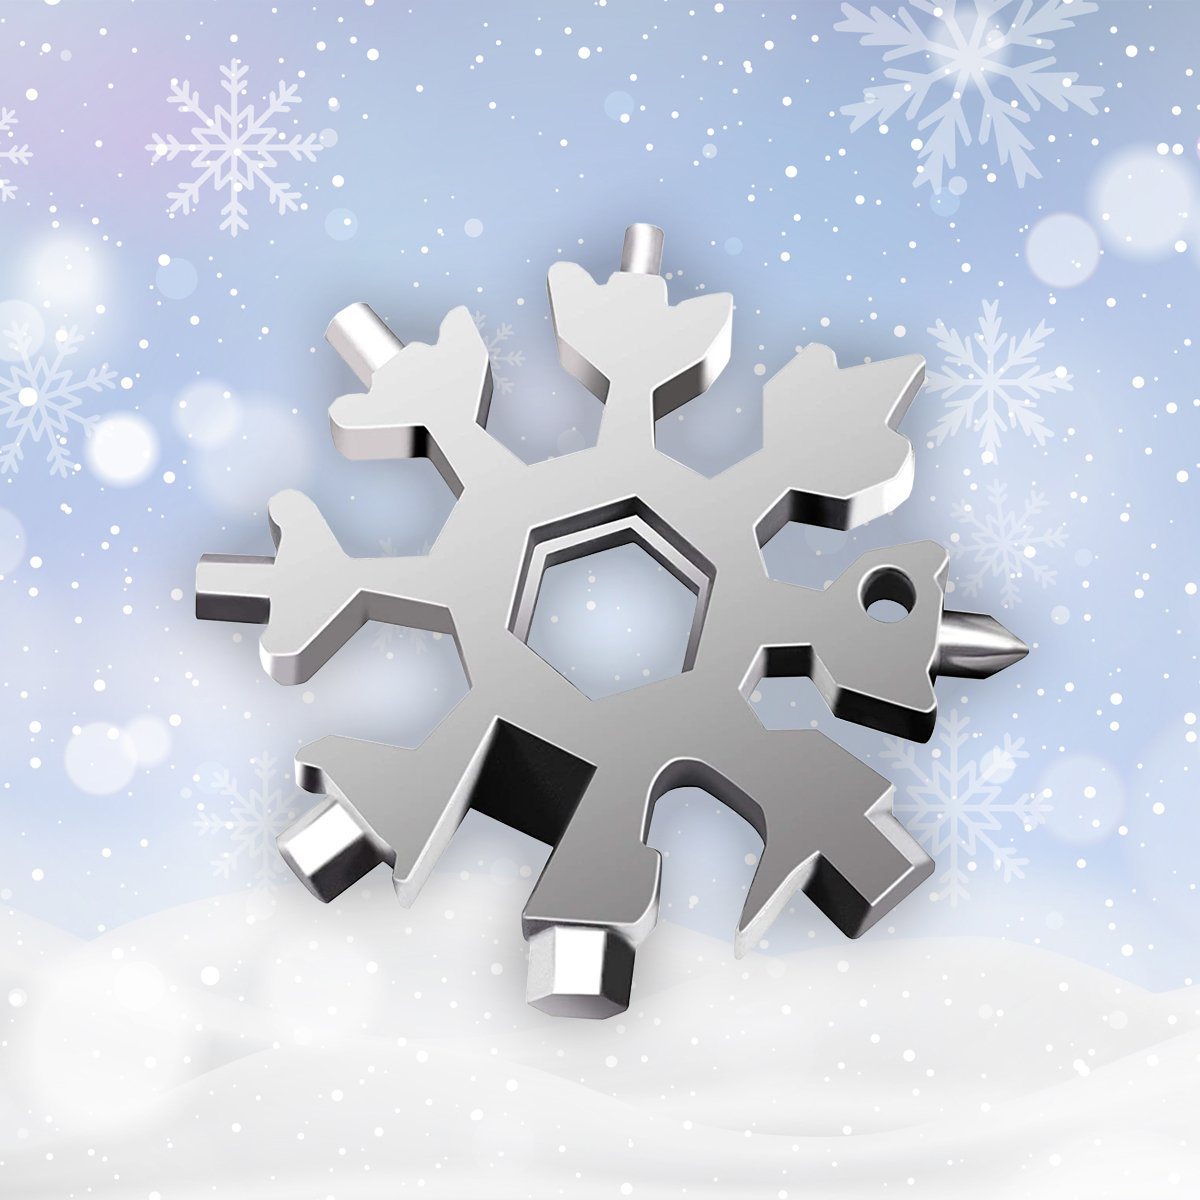 Amenitee 18-in-1 snowflakes multi-tool MULTITOOLS smartsaker 